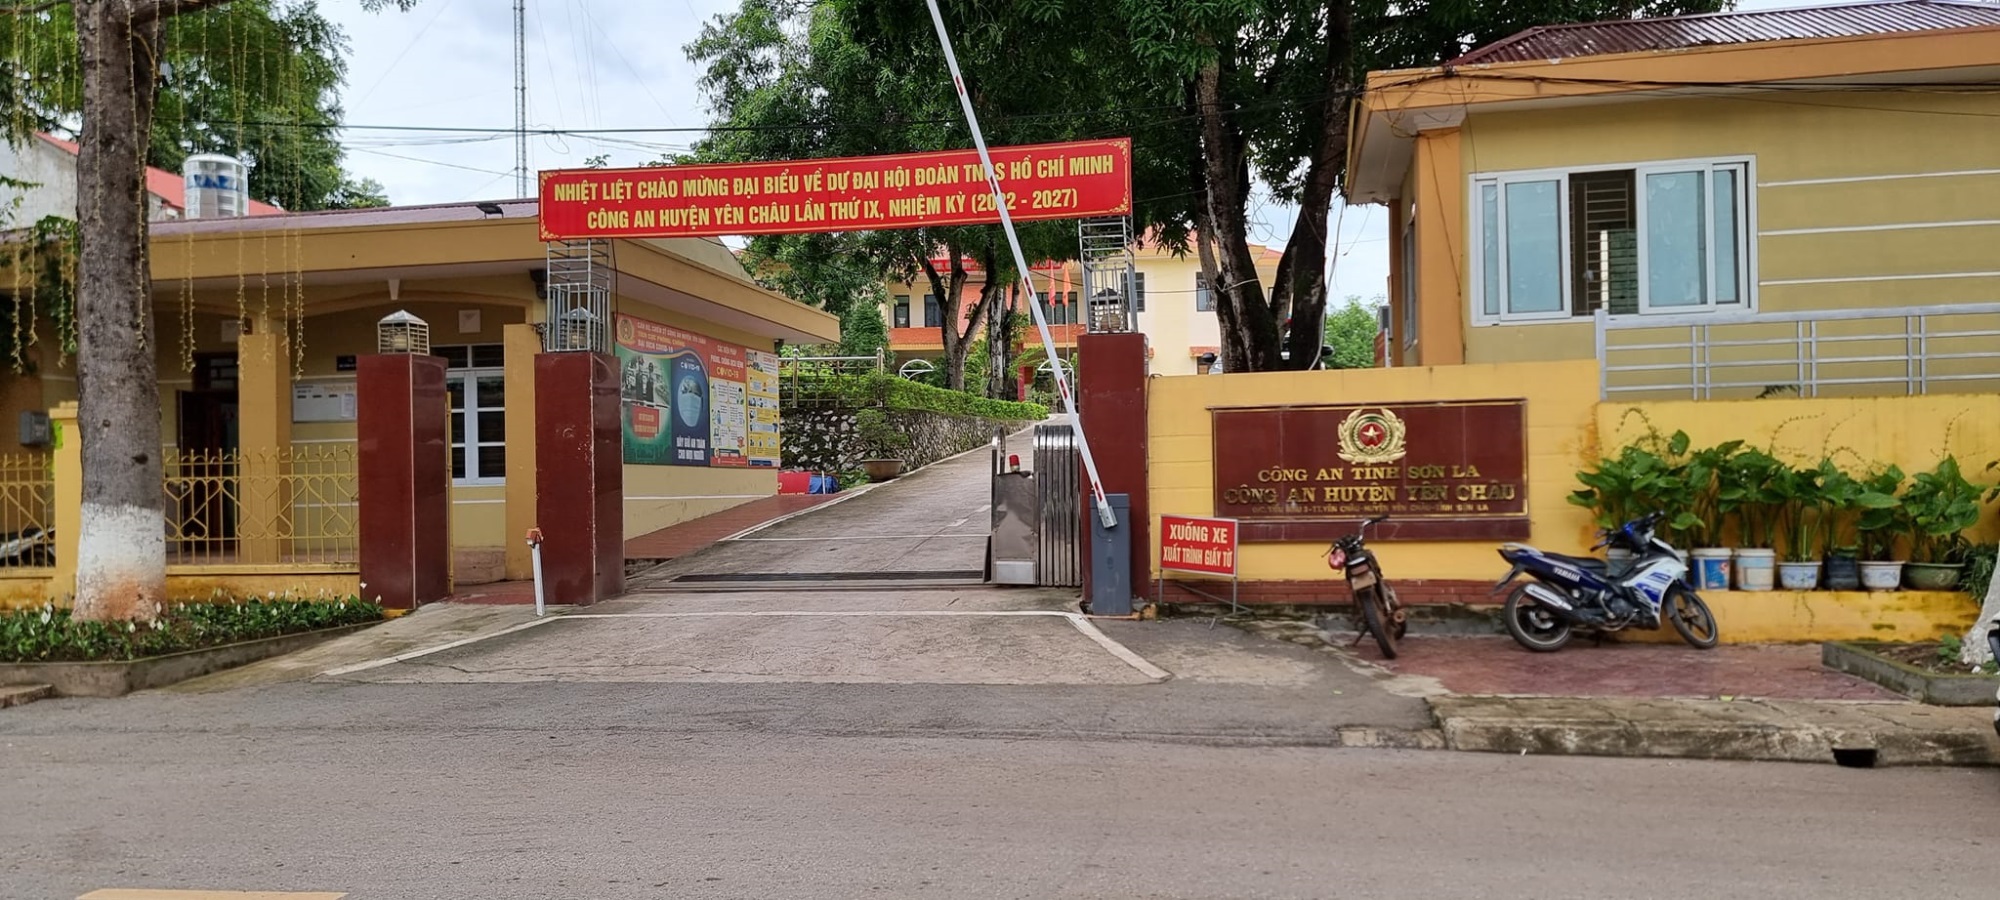 Luật sư Nguyễn Anh Thơm cập nhật thông tin MỚI nhất vụ vợ cắt 'của quý' của chồng tại Sơn La - Ảnh 2